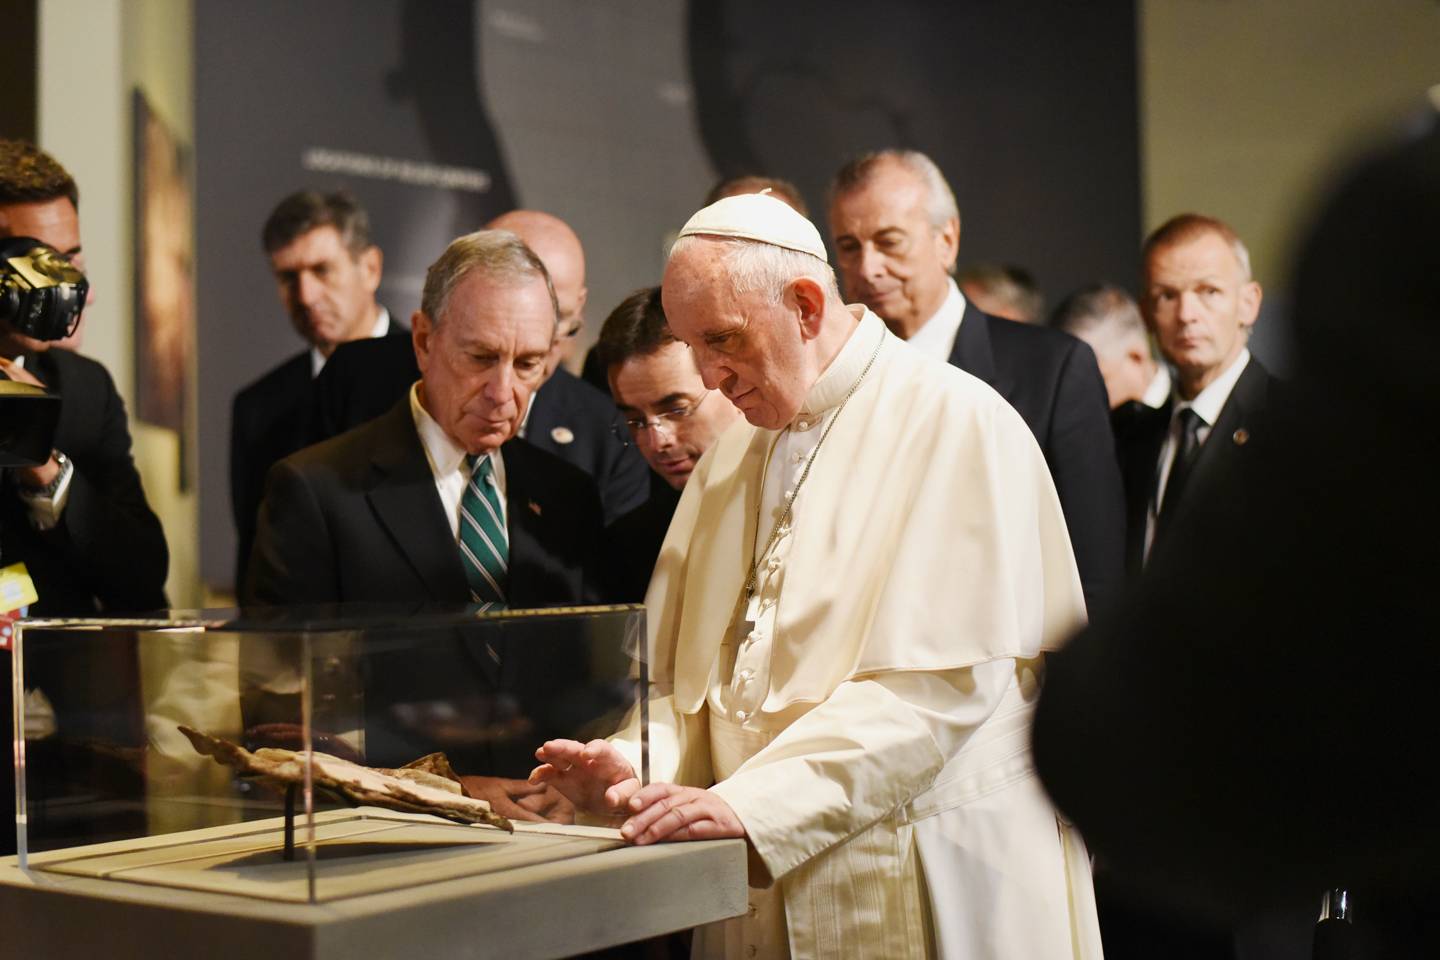 Papież Franciszek przygląda się odnalezionej w gruzach Biblii wtopionej w stalową bryłę podczas ataku terrorystycznego na World Trade Center – Narodowe Muzeum Pamięci 11 września, Nowy Jork 